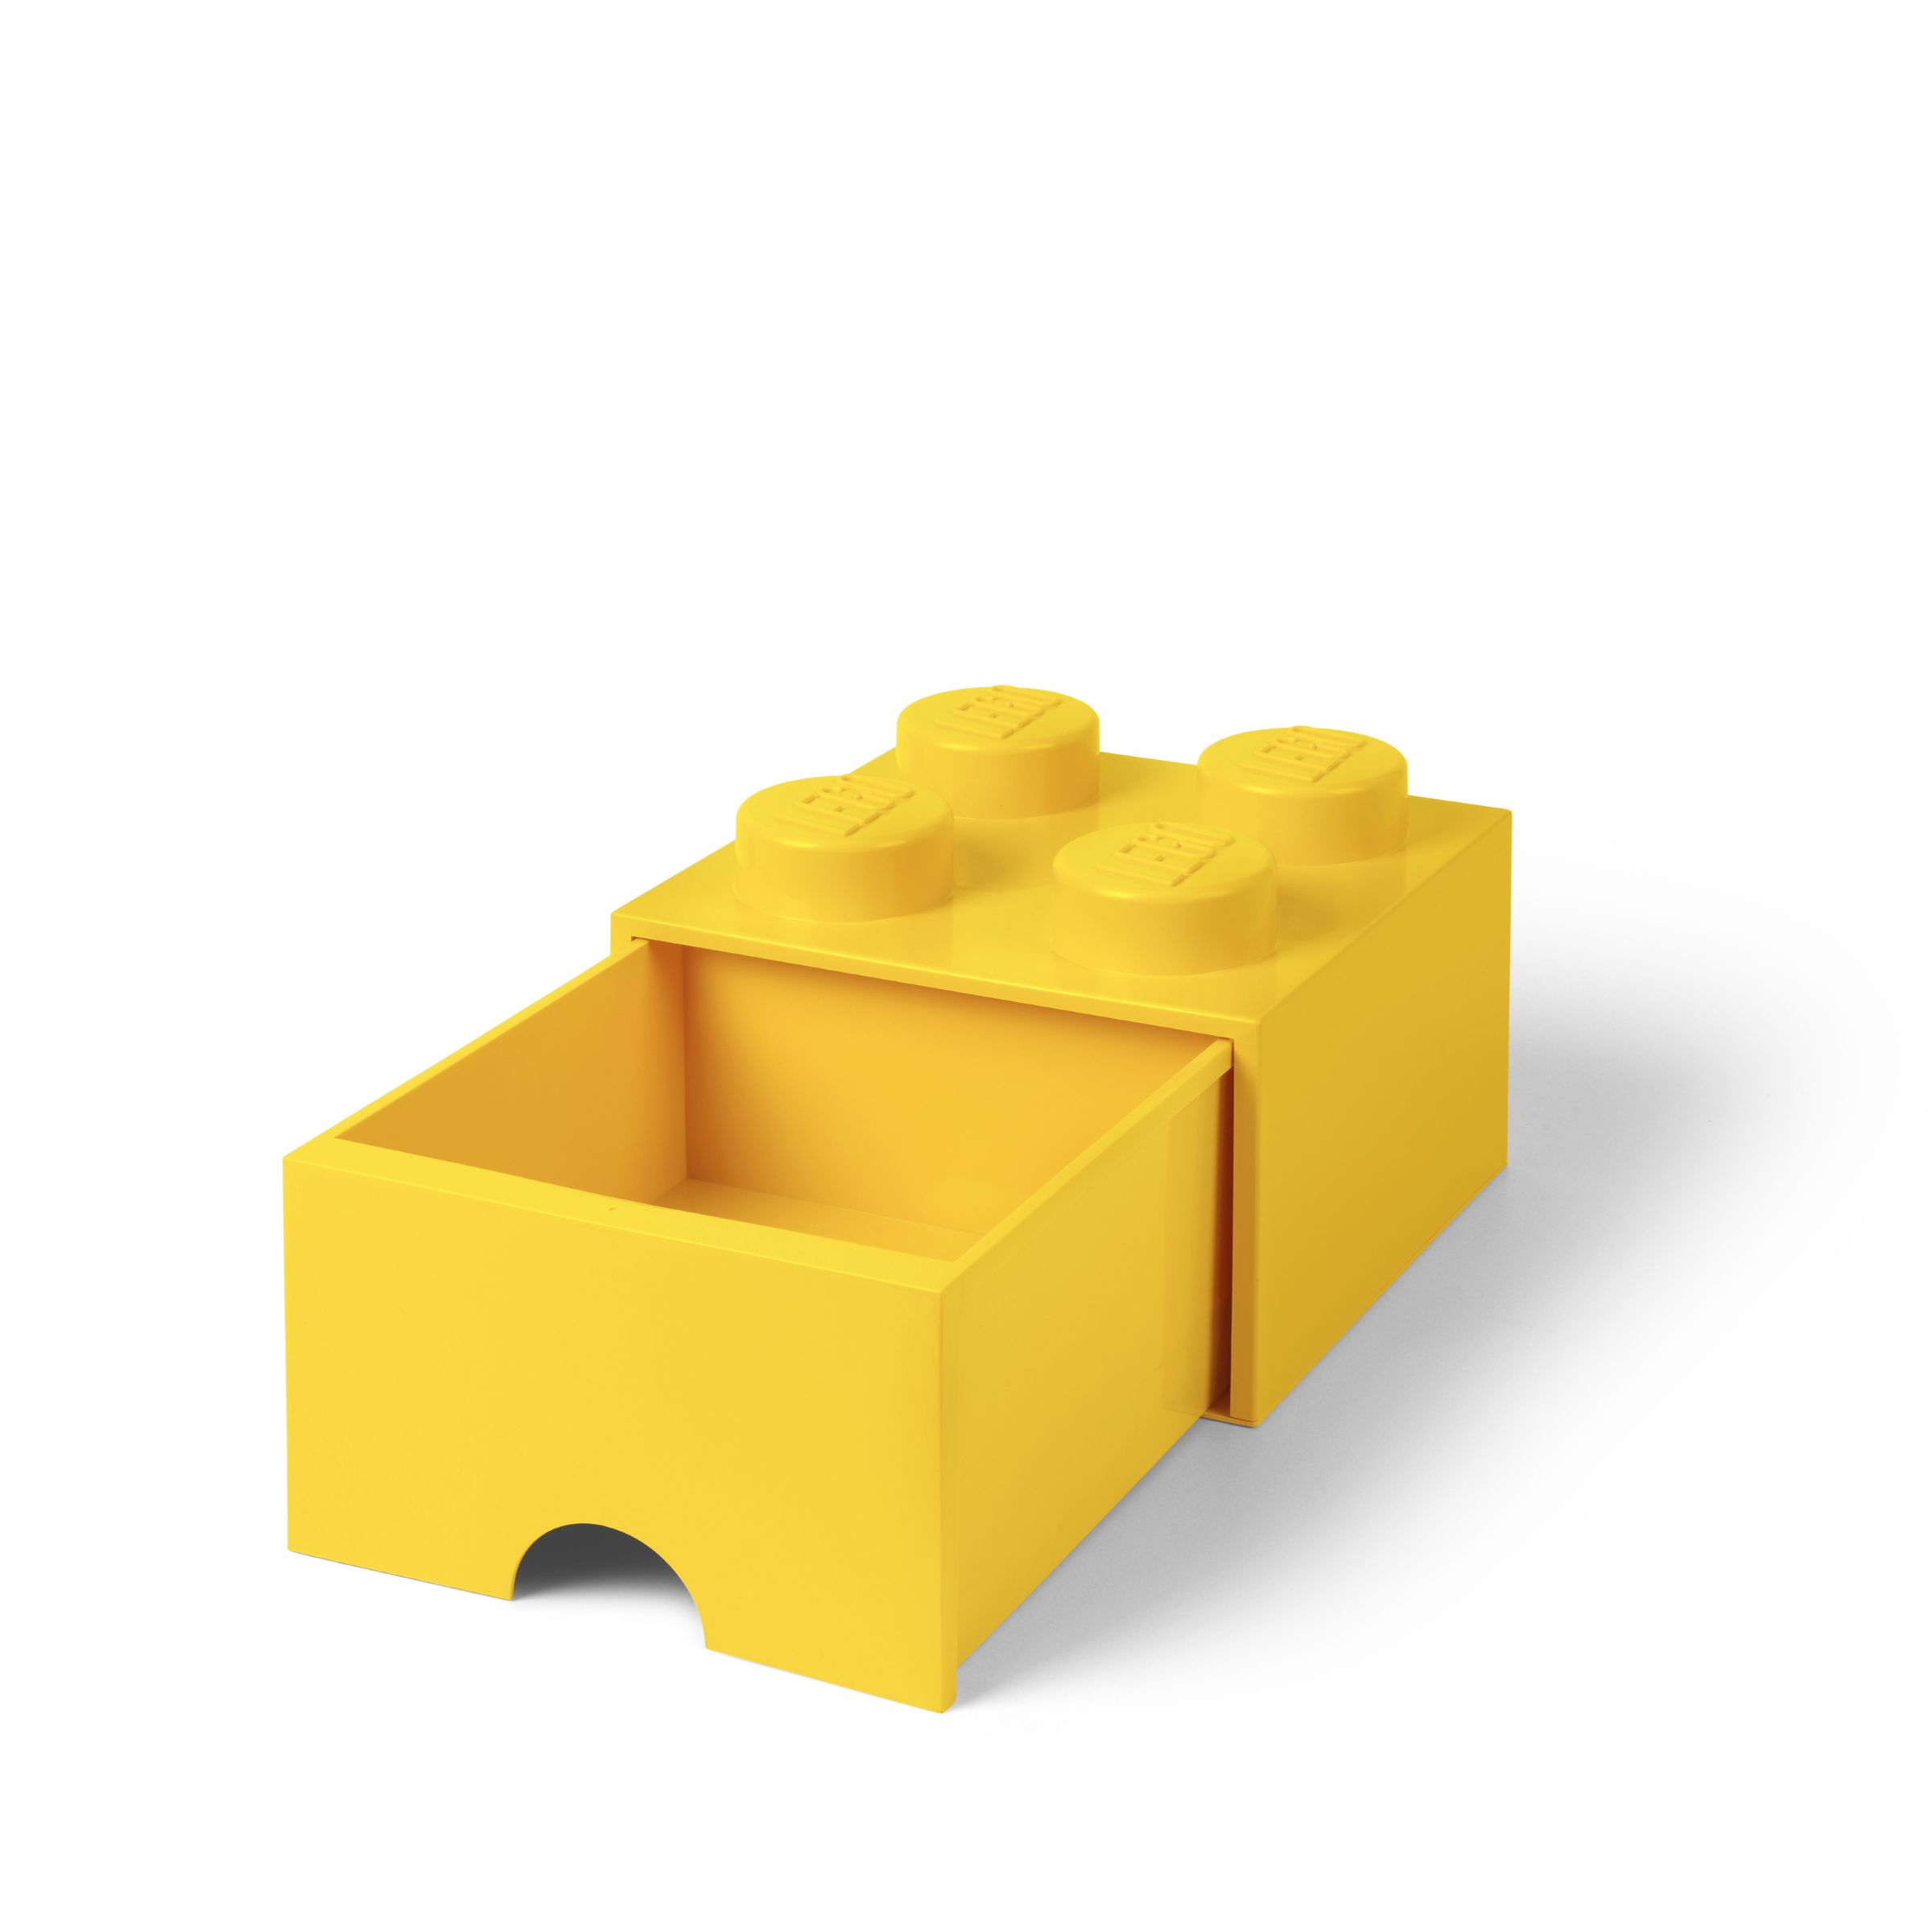 LEGO Gear 5006170 Stein mit 4 Noppen und Schubfach in Gelb LEGO_5006170_alt2.jpg